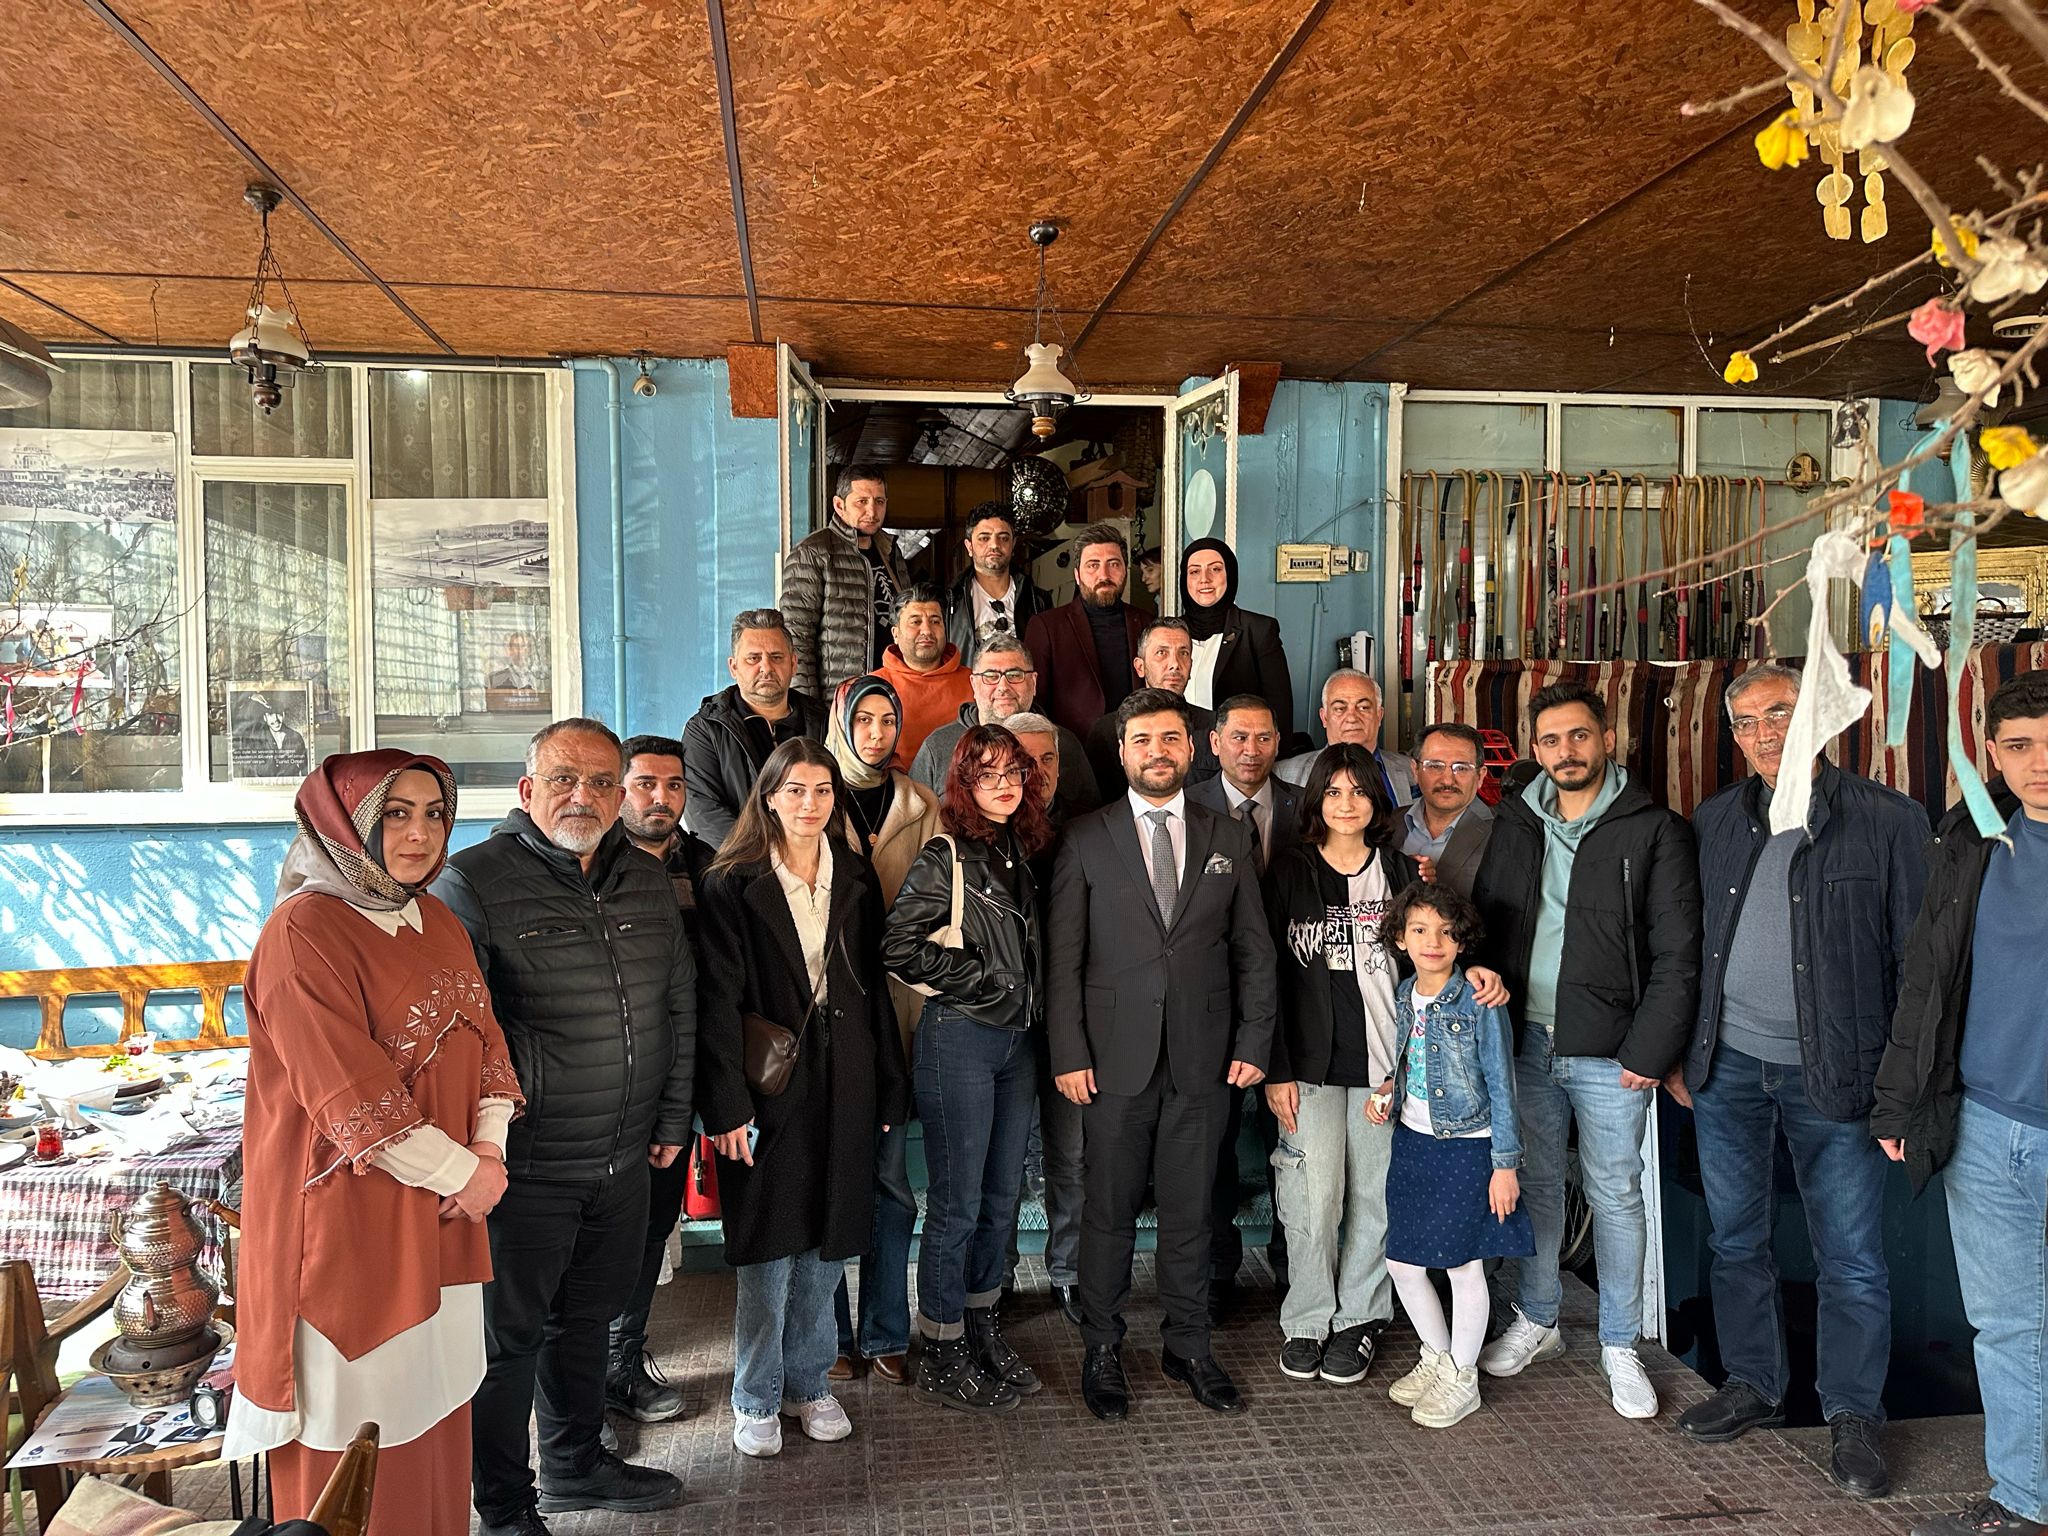 DEVA Partisi Erzincan Belediye Başkan Adayı Av. Mehmet Sait Başaran; “Allah böylesi güzel bir şehre hizmet etmeyi bizlere nasip etsin”